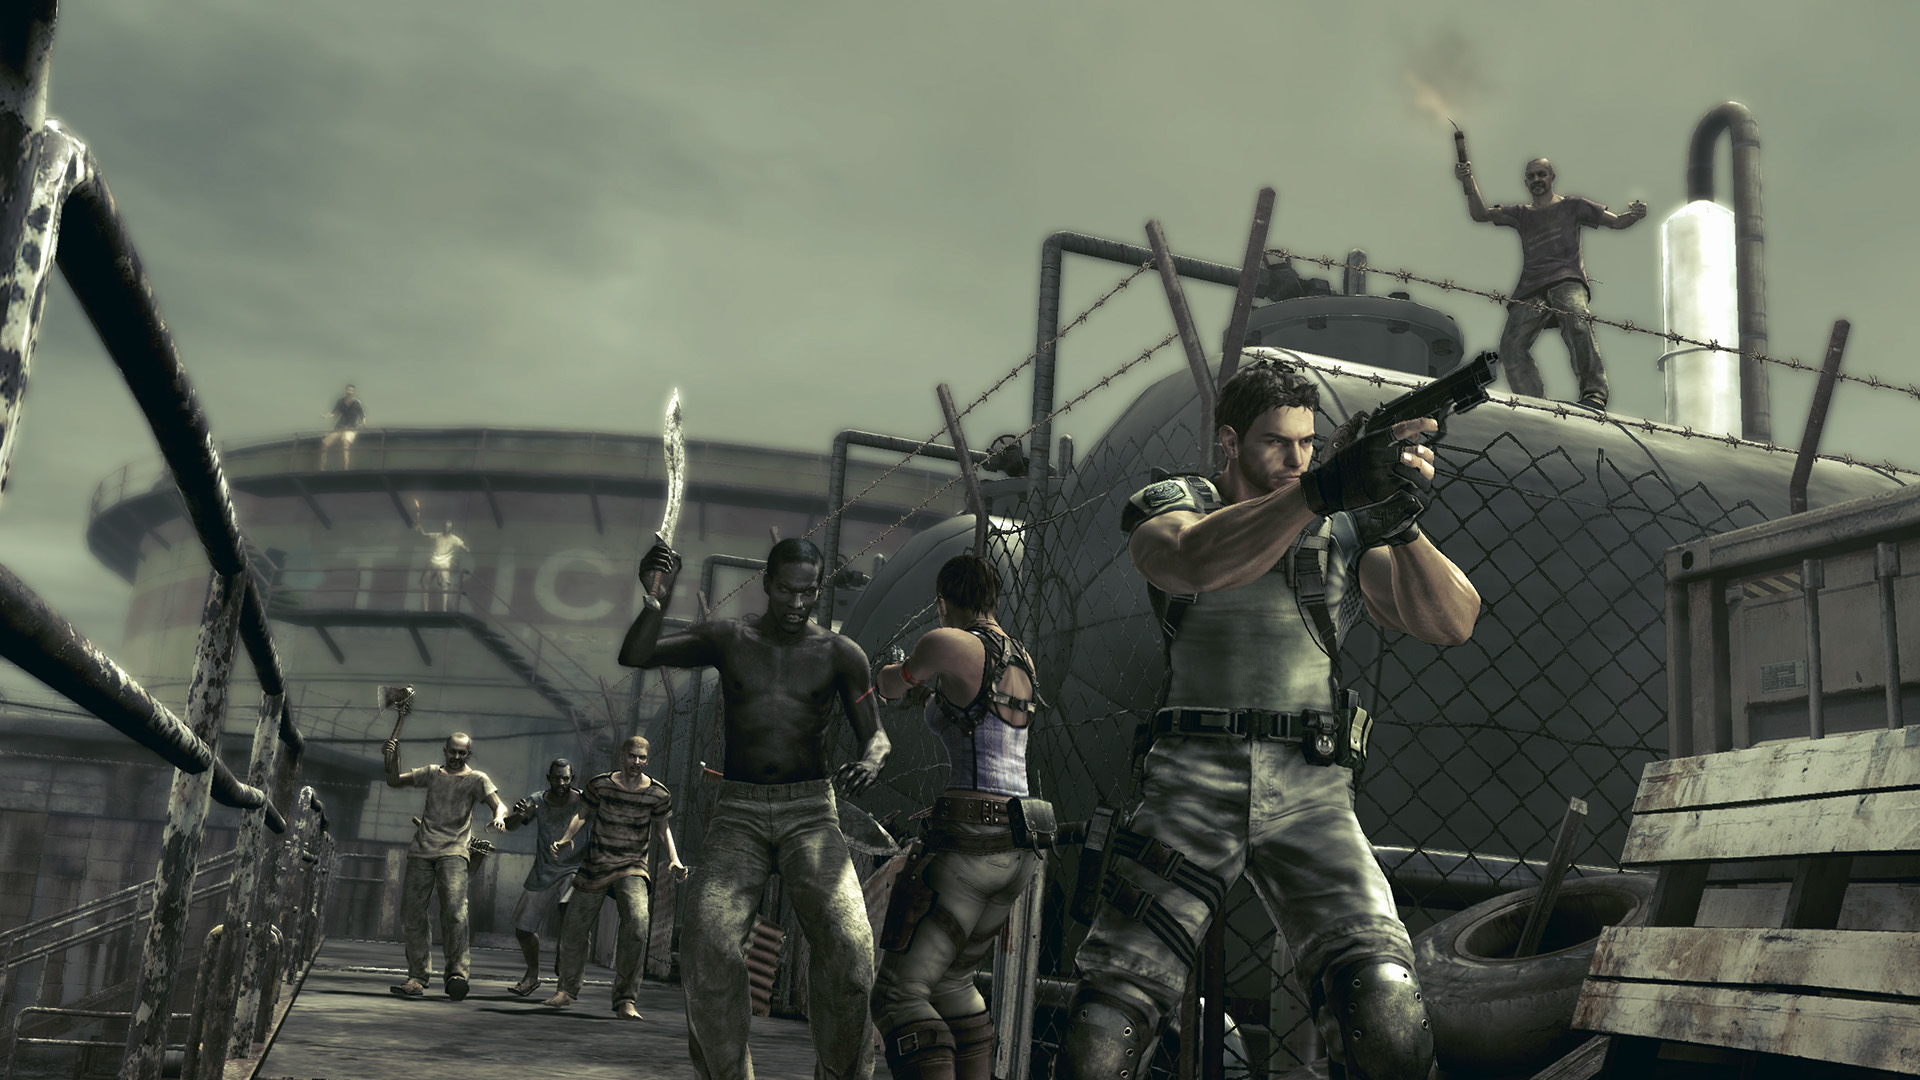 Mudanças em Resident Evil e a onda de REmakes - REVIL